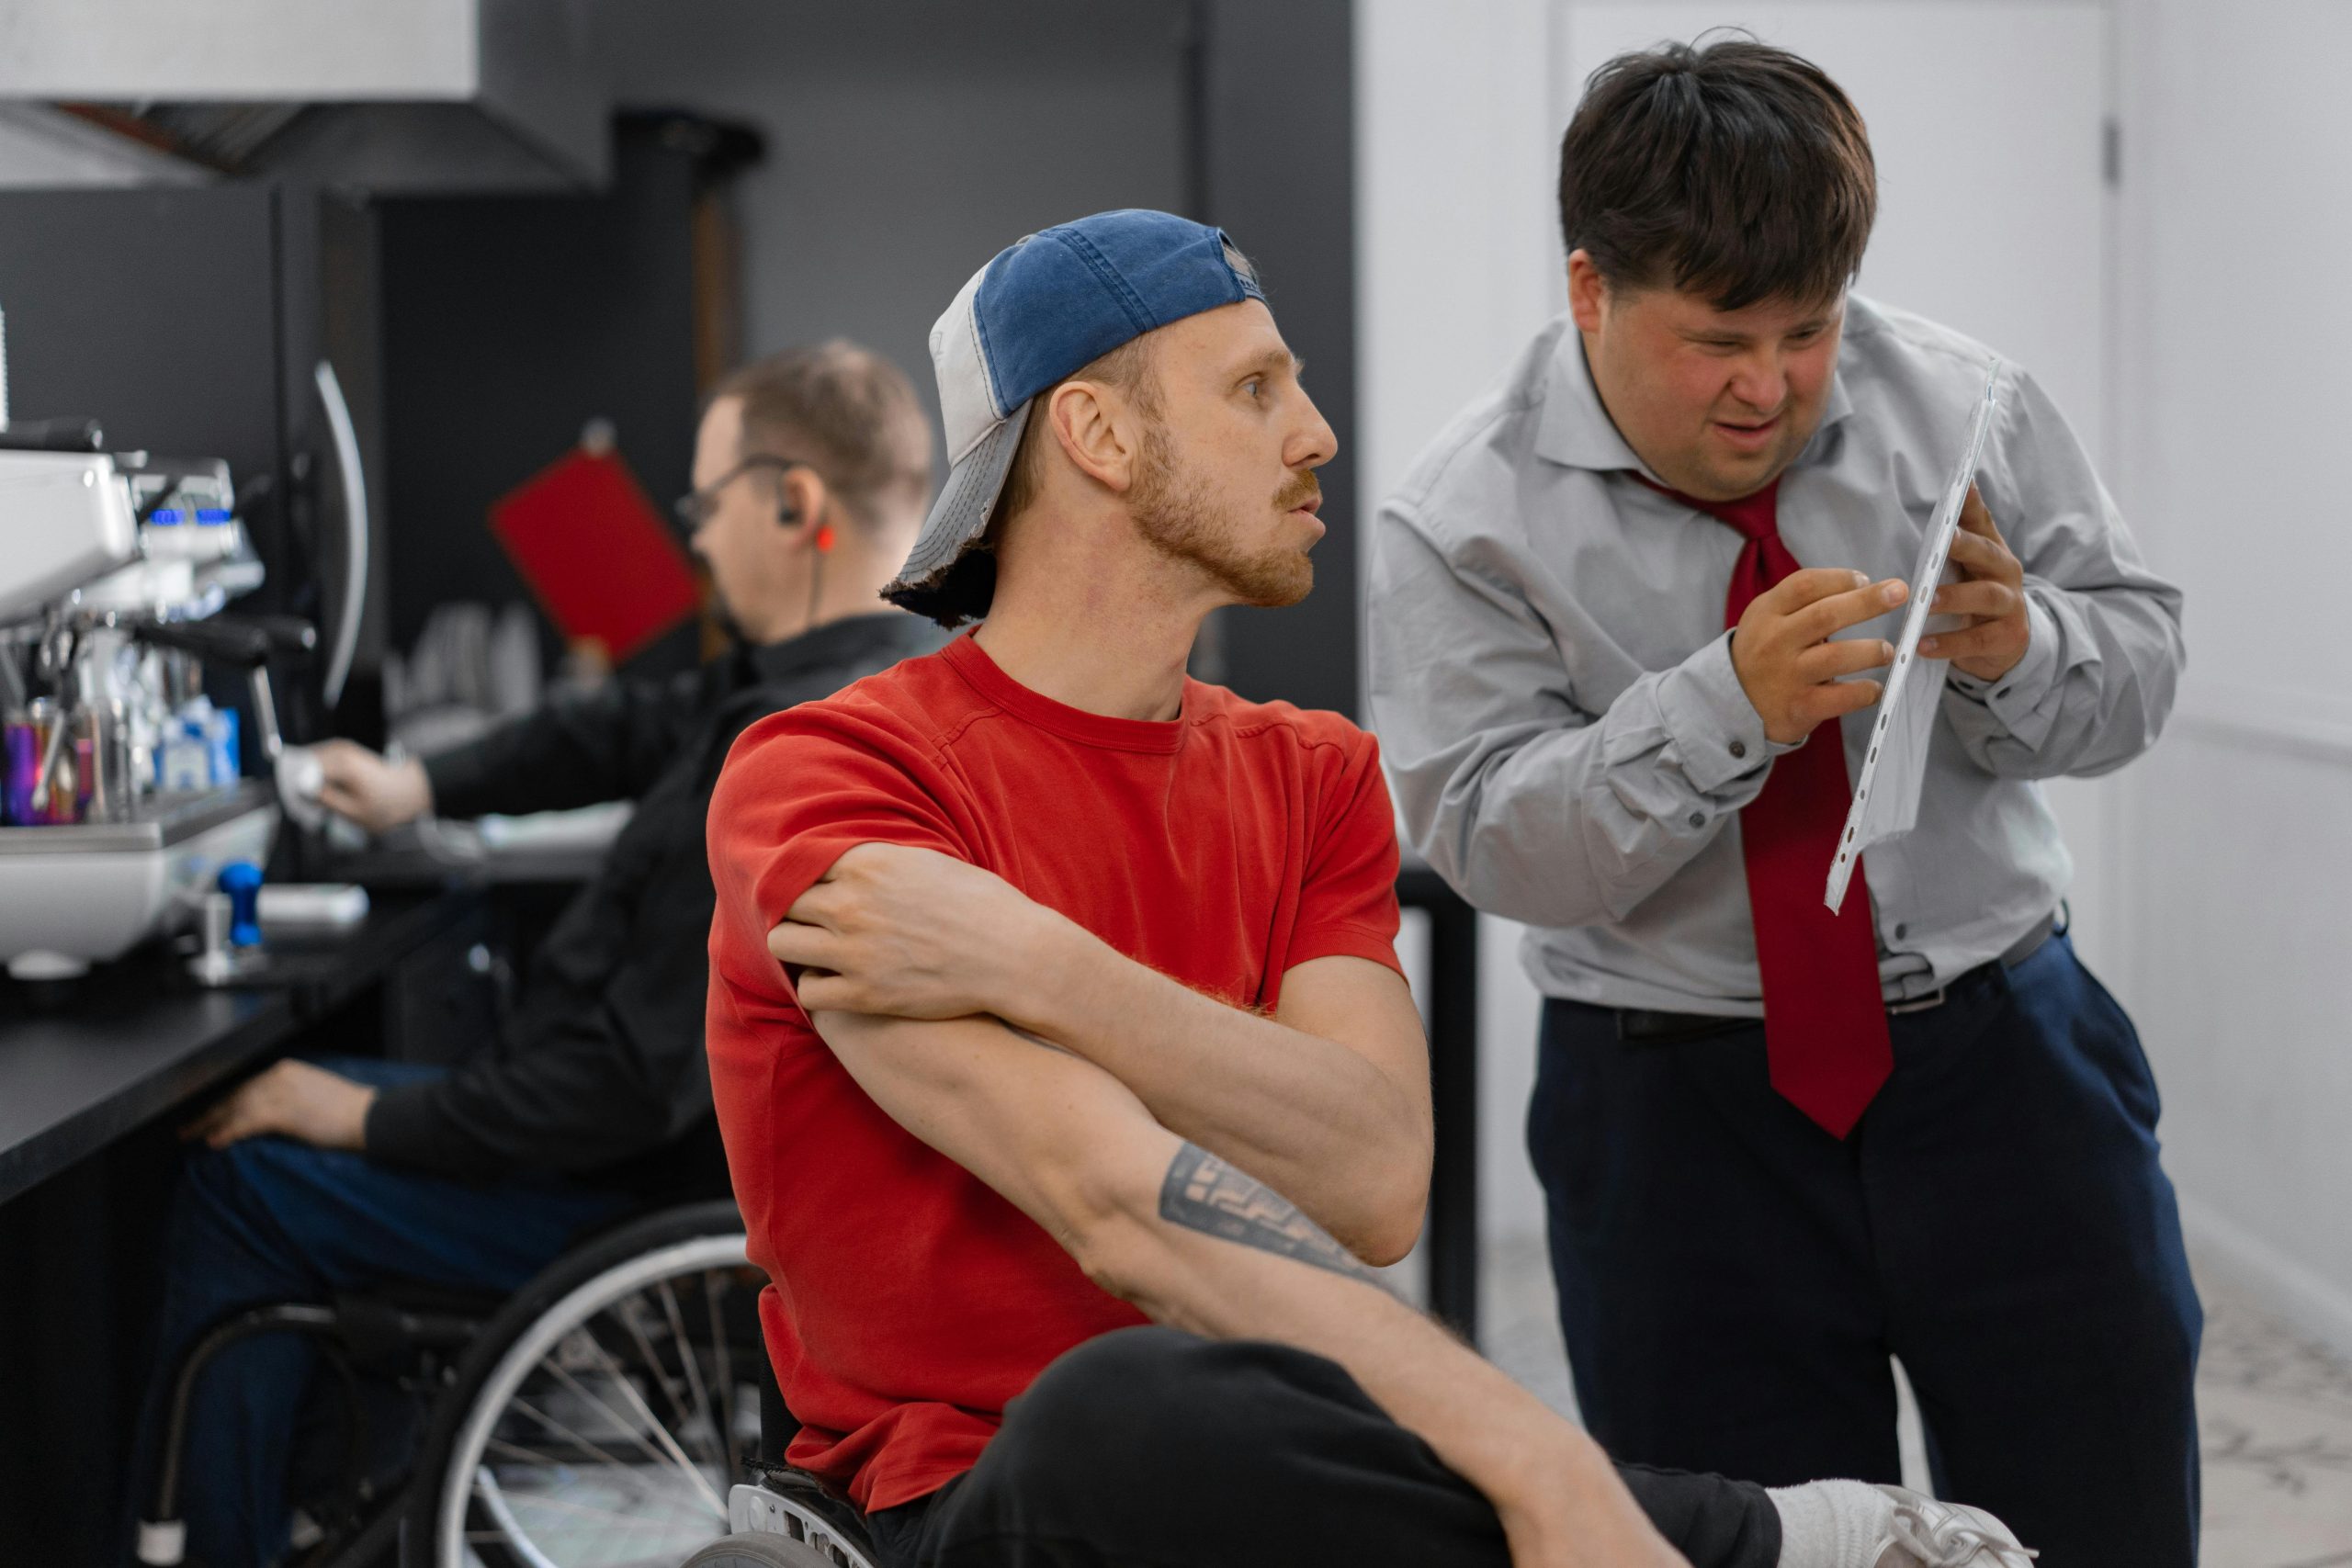 Disabilità e inclusione nell'Ue. La foto è scattata in un contesto lavorativo dove sono coinvolte due persone con disabilità.